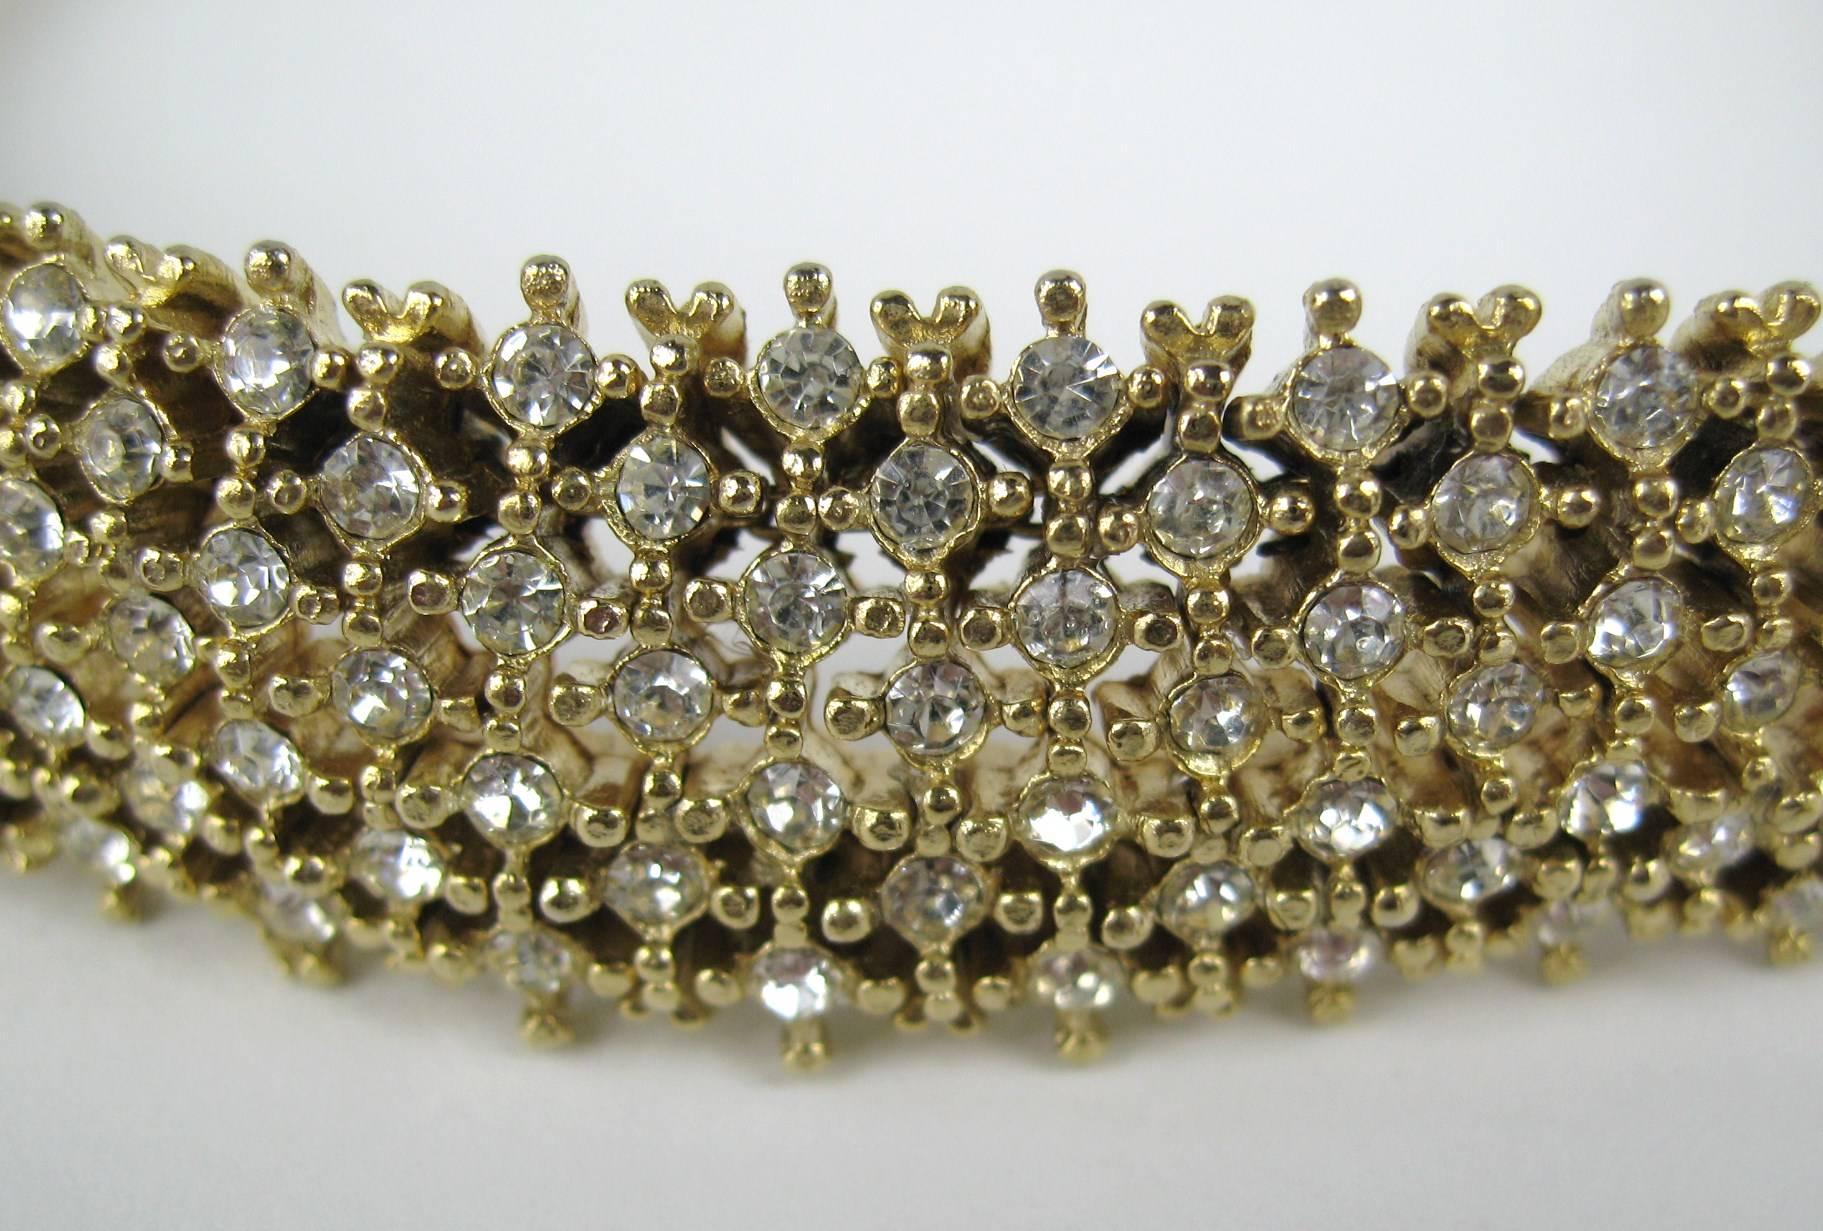 Die Les Bernard Halskette besteht aus mehreren Schichten von Kristallen. Mess .77 in breit mit einem Fold over Verschluss. 16 in Choker Länge. New Old Stock, nie getragen. Dies ist ein Auszug aus einer umfangreichen Sammlung von zeitgenössischer